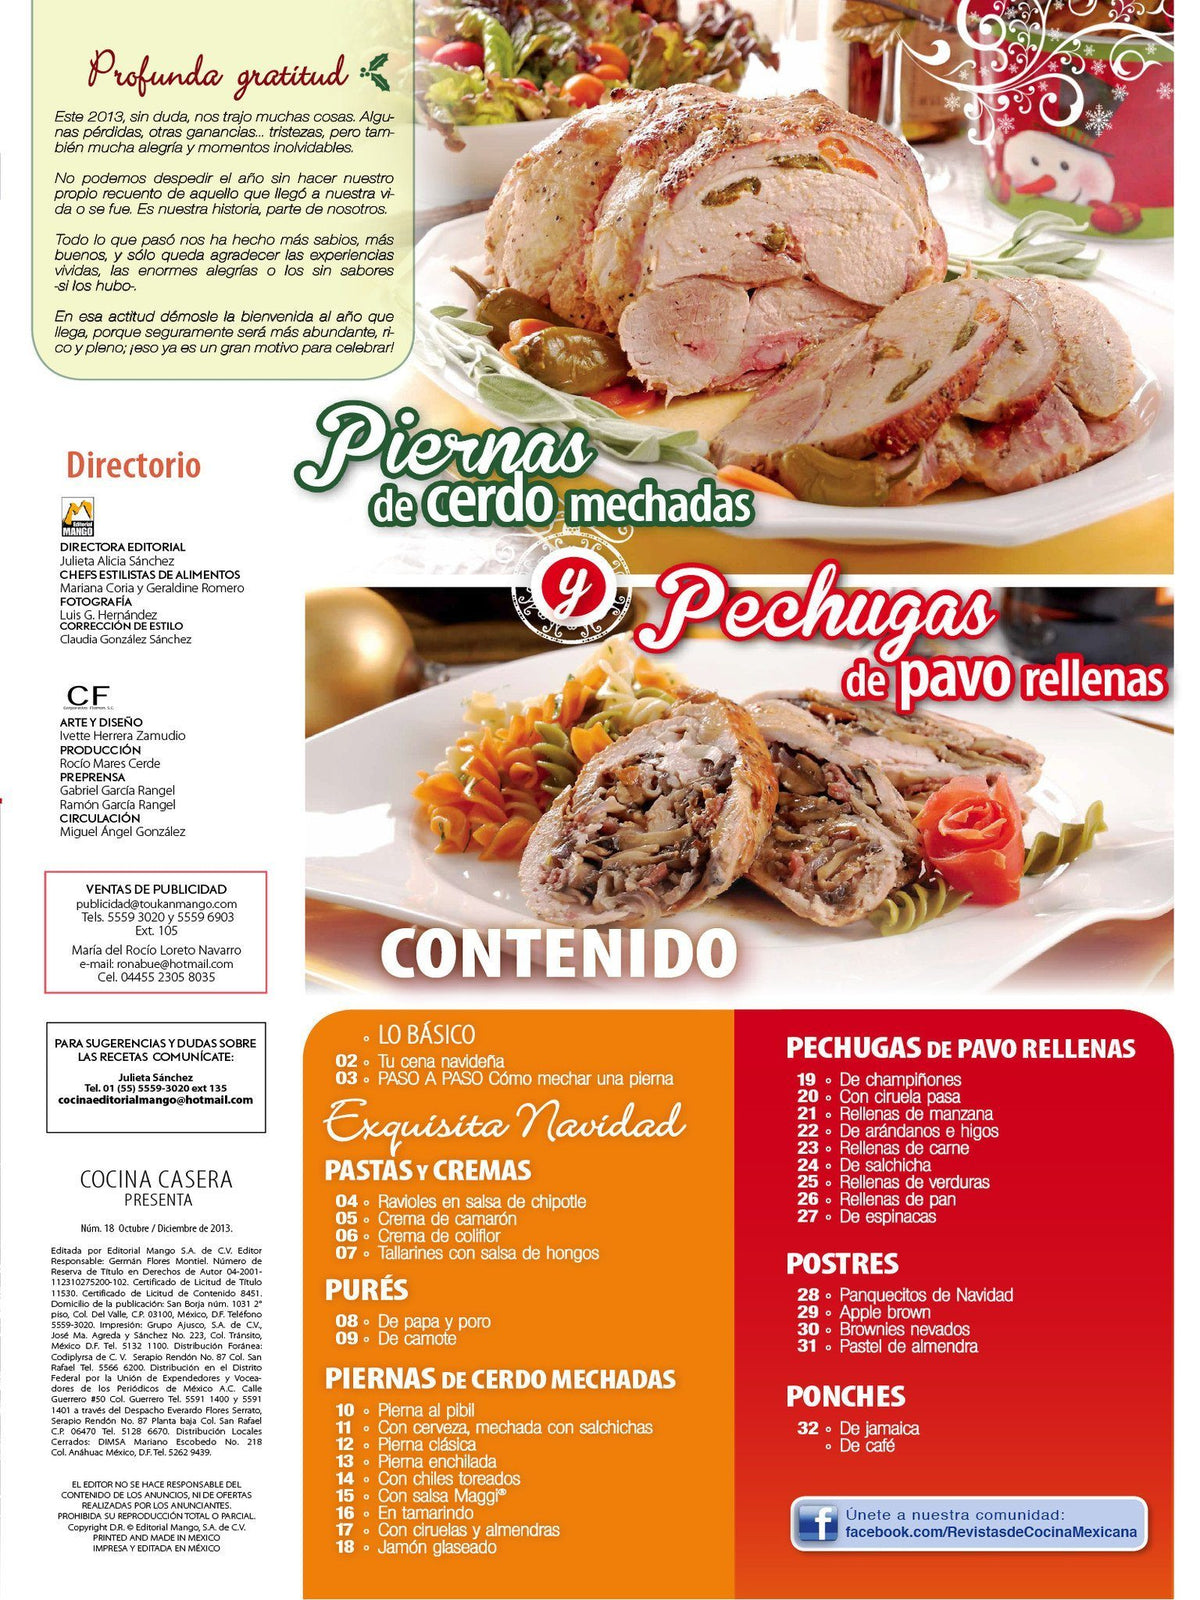 Cocina Casera Presenta 18 - Piernas y Pechugas para que tu cena sea un ̩xito - Formato Digital - ToukanMango